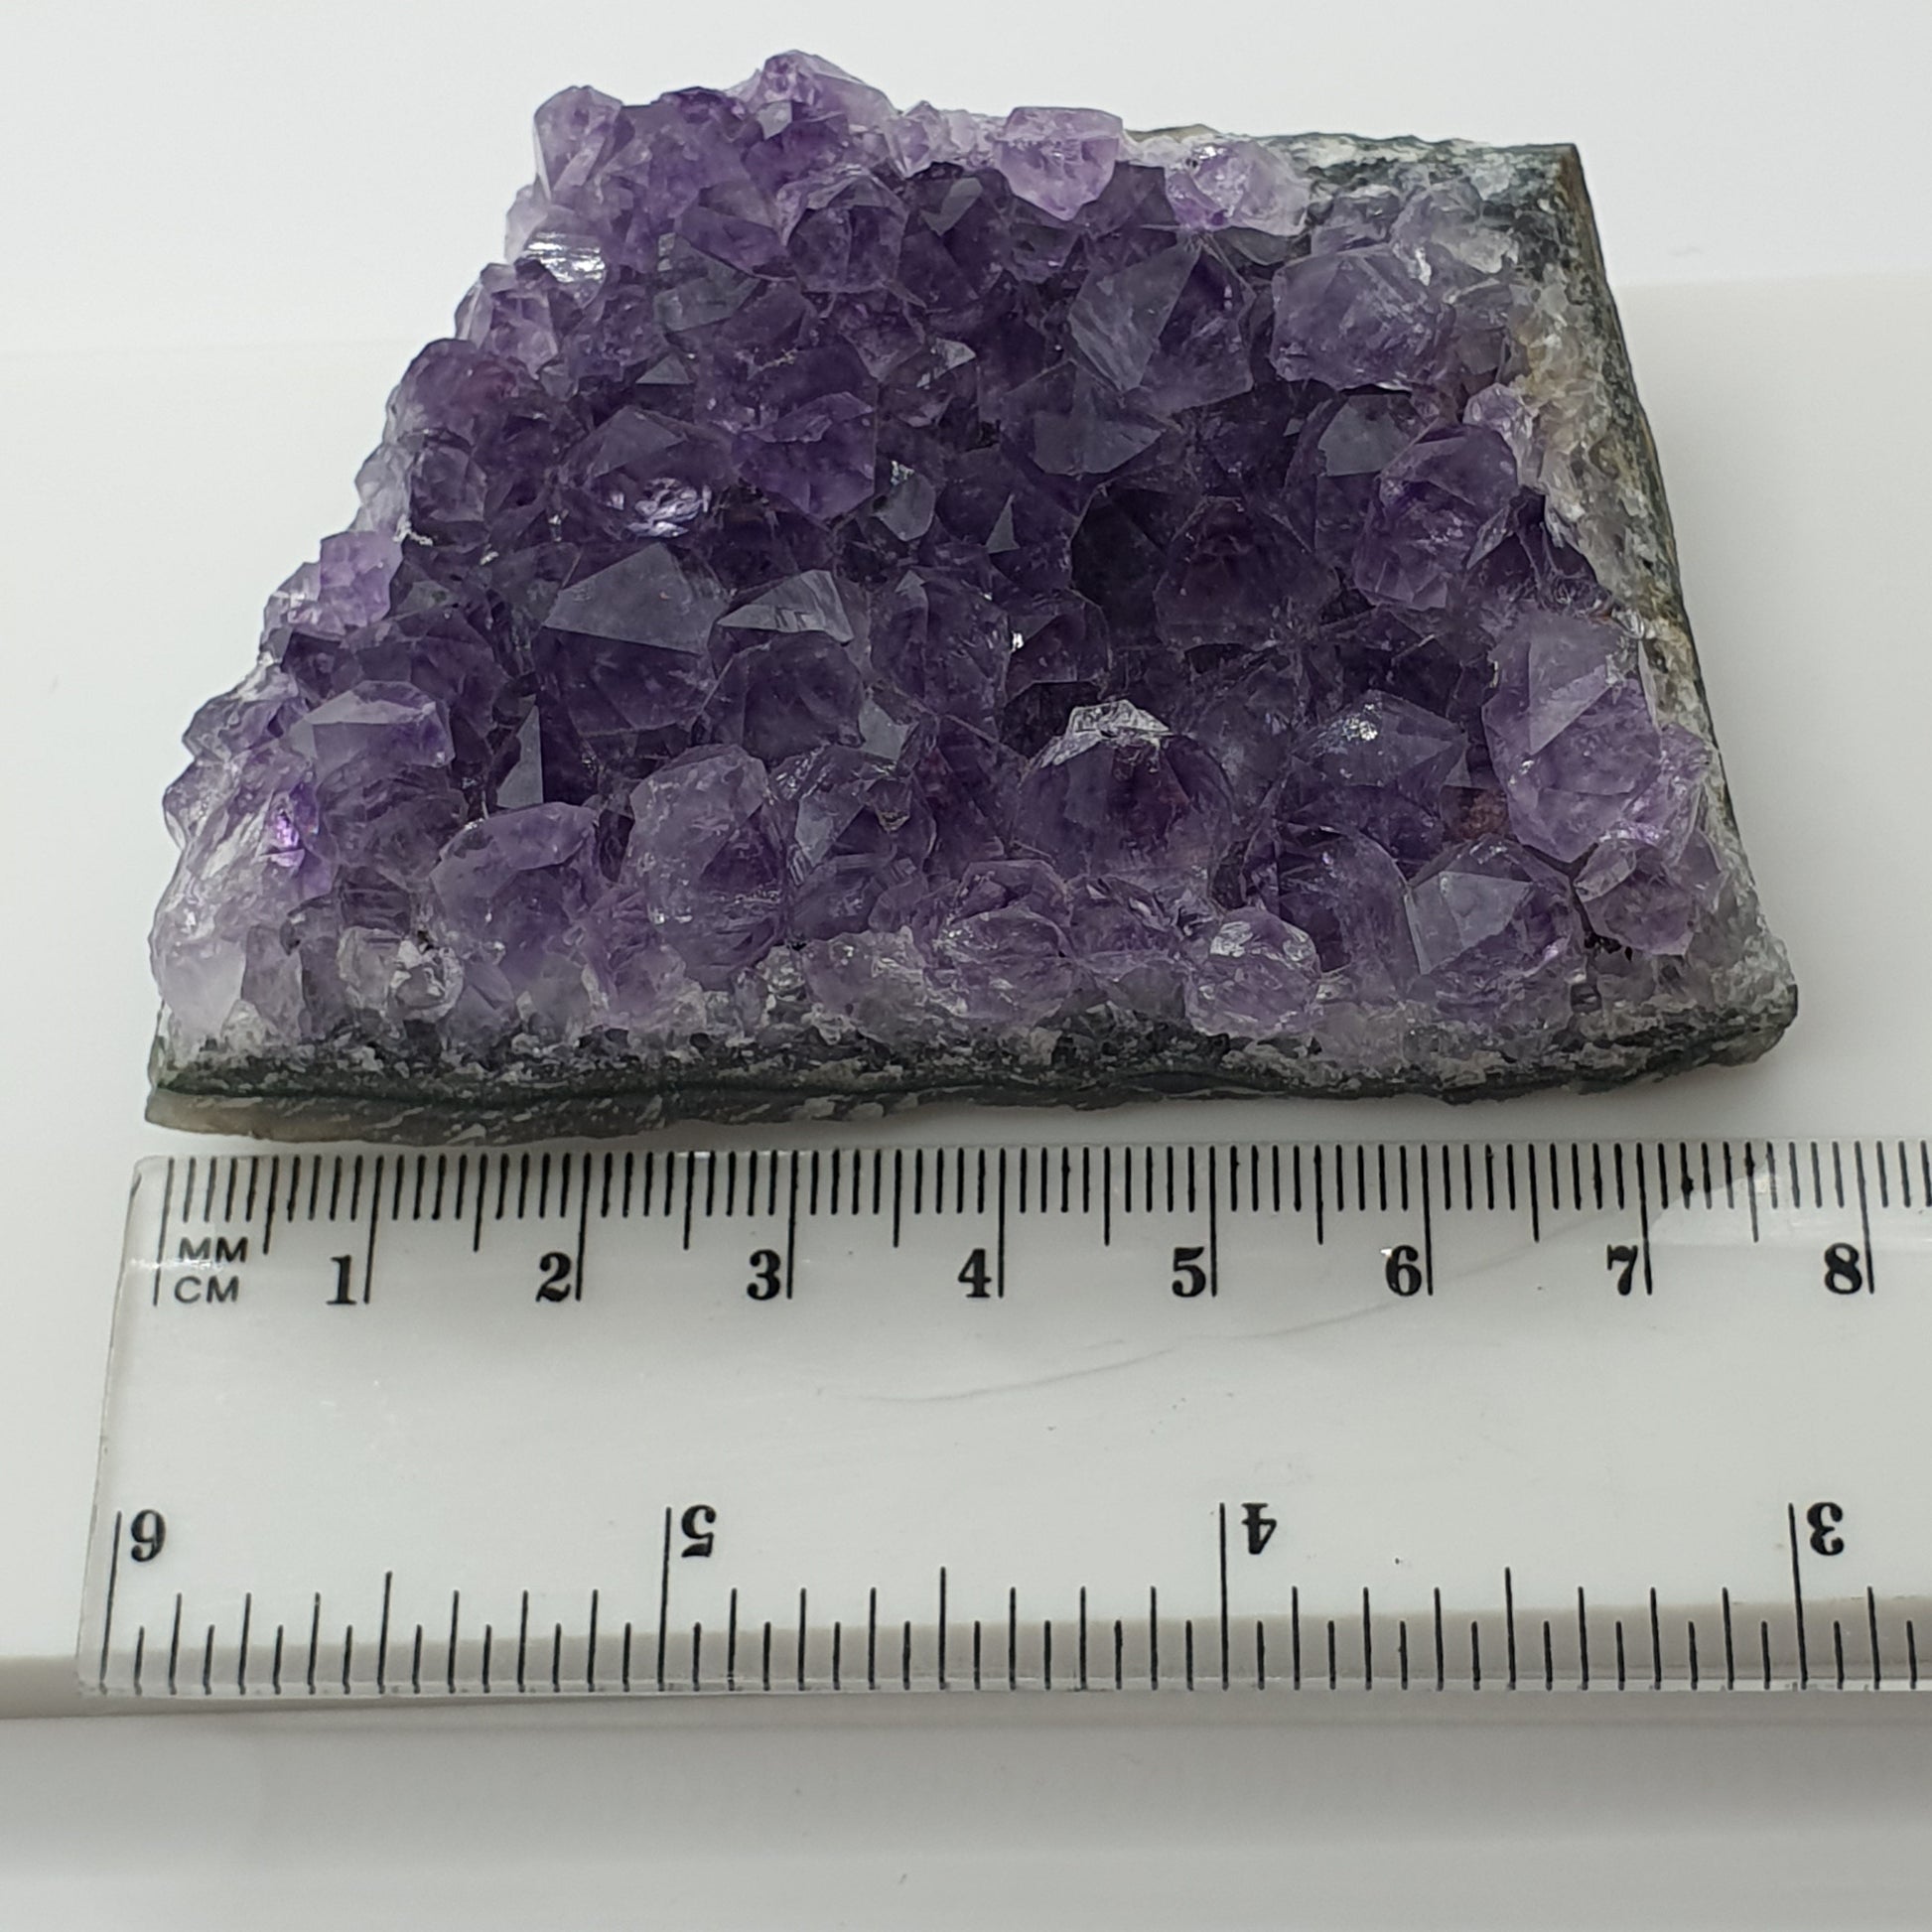 High quality Uruguay Amethyst Cluster 144g | Gemstone, Crystal, Crystal Healing